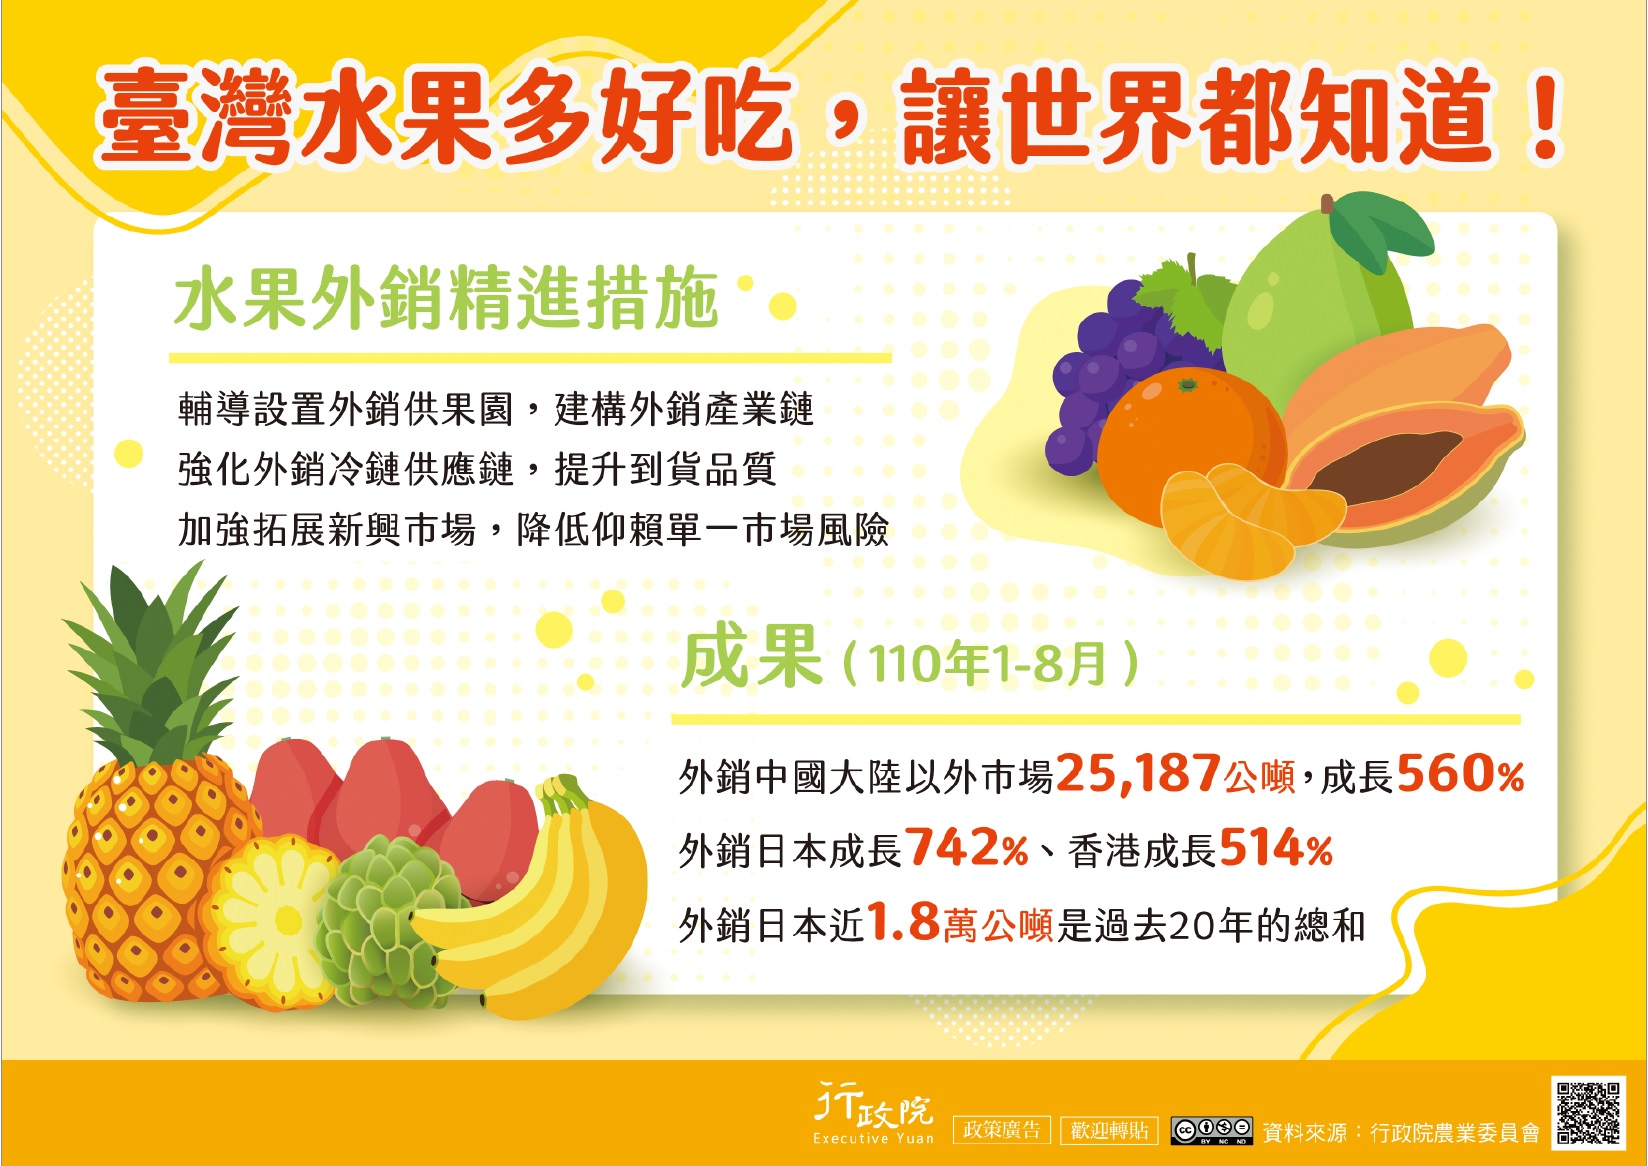 「臺灣水果外銷精進措施」政策說明